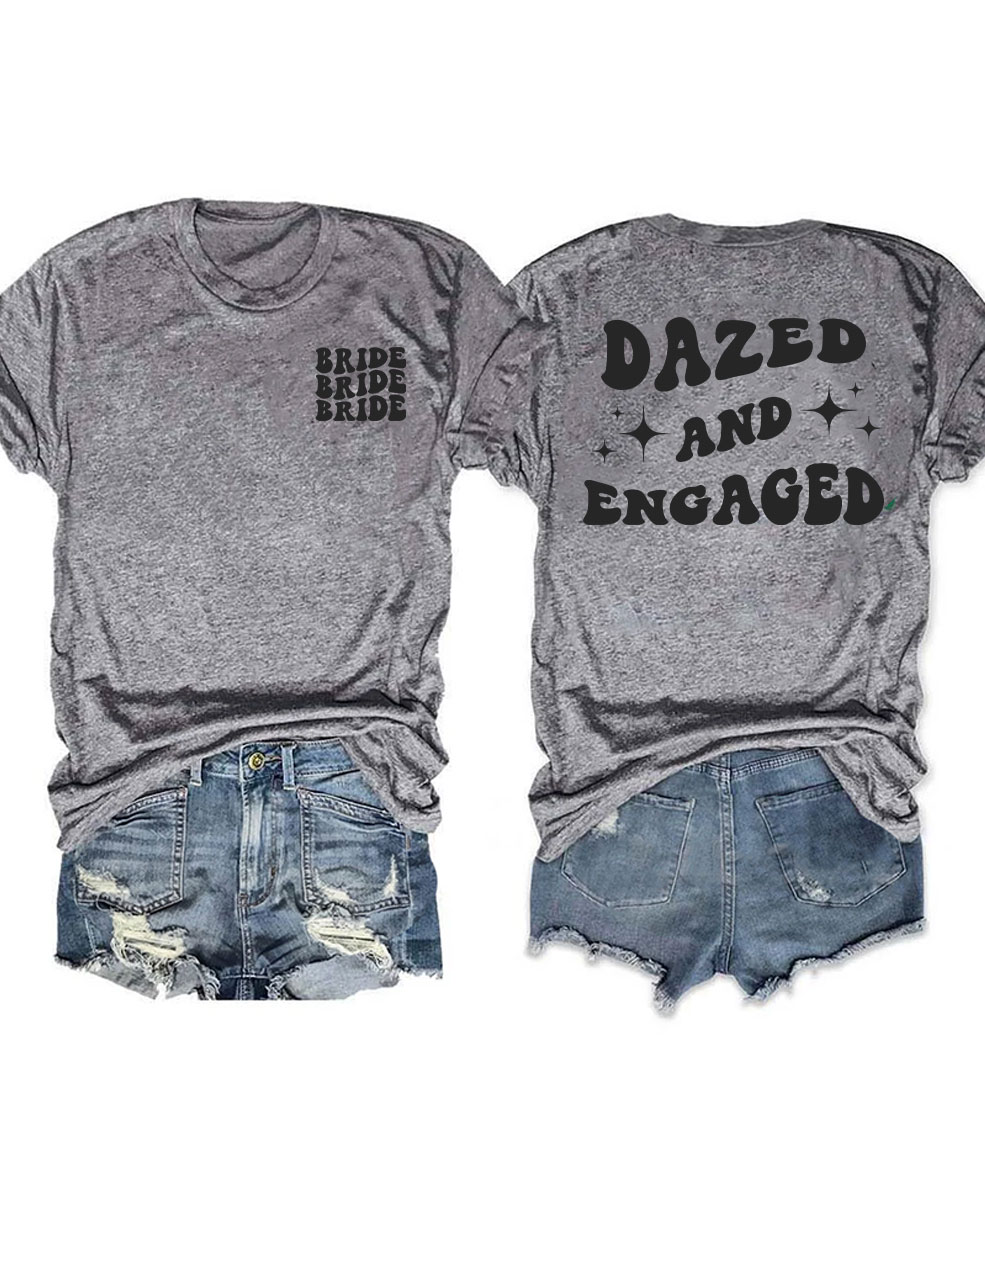 Dazed And Engaged T-Shirt